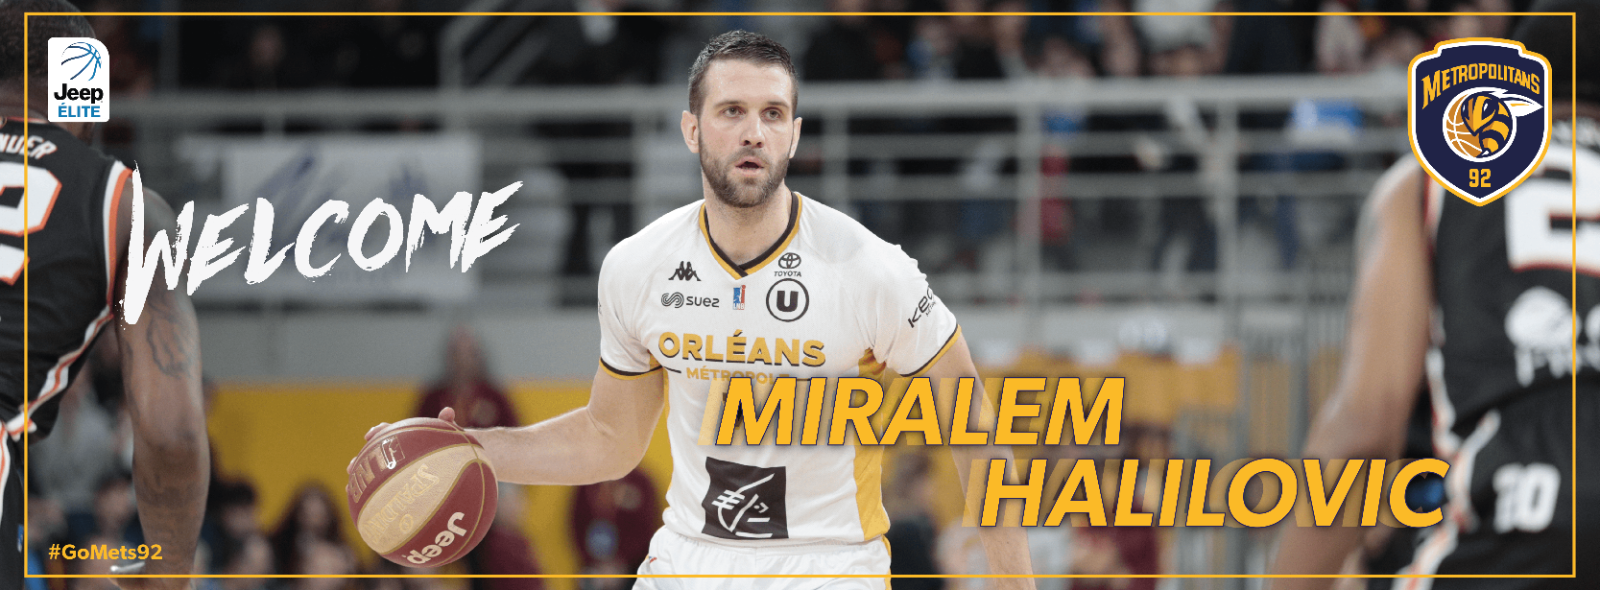 Recrutement - Miralem Halilovic rejoint les Metropolitans 92 !